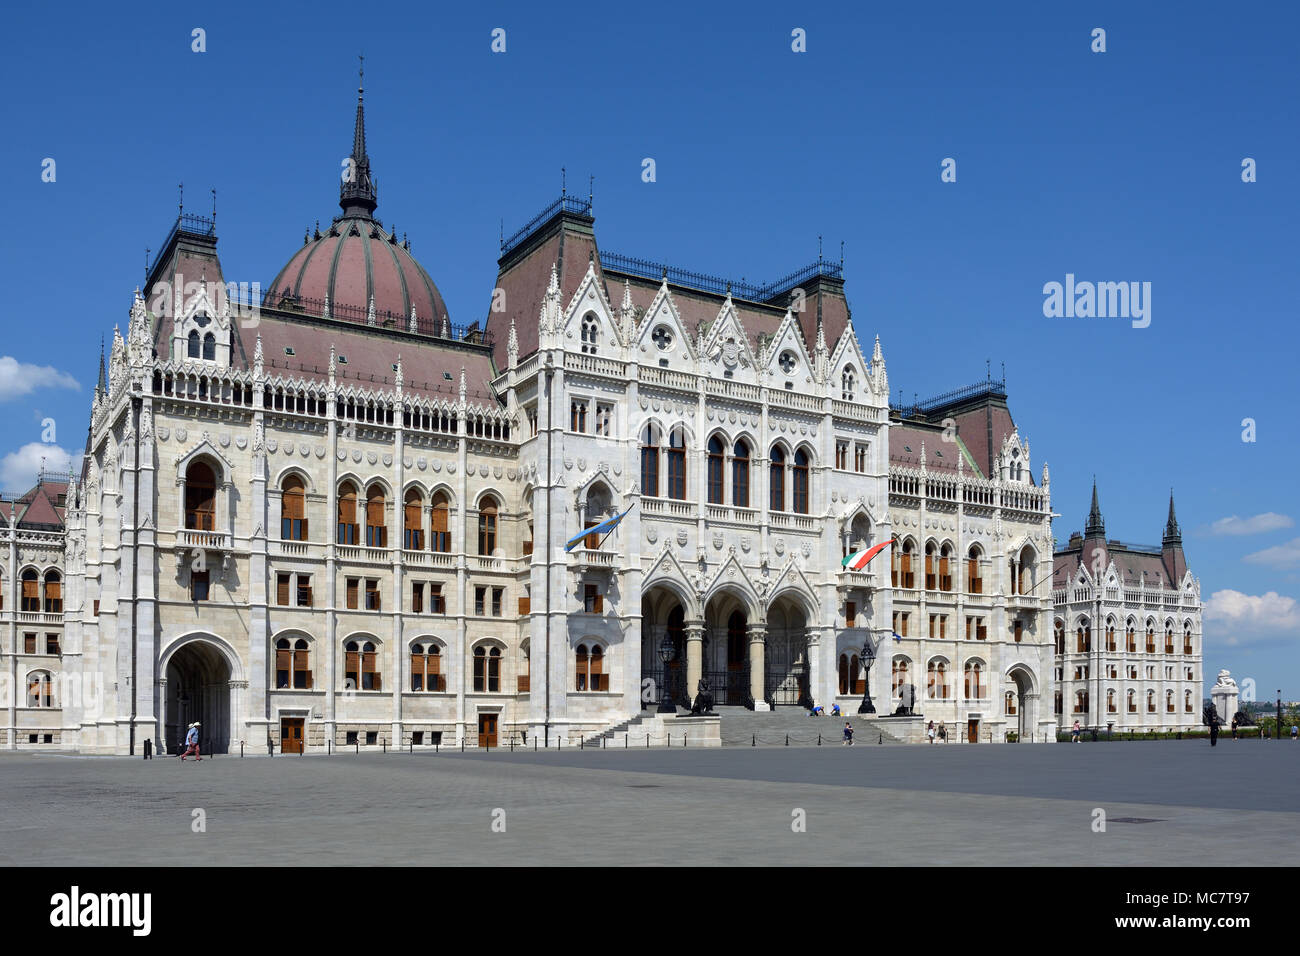 Portail principal de l'édifice du parlement hongrois dans la capitale Budapest - Hongrie. Banque D'Images